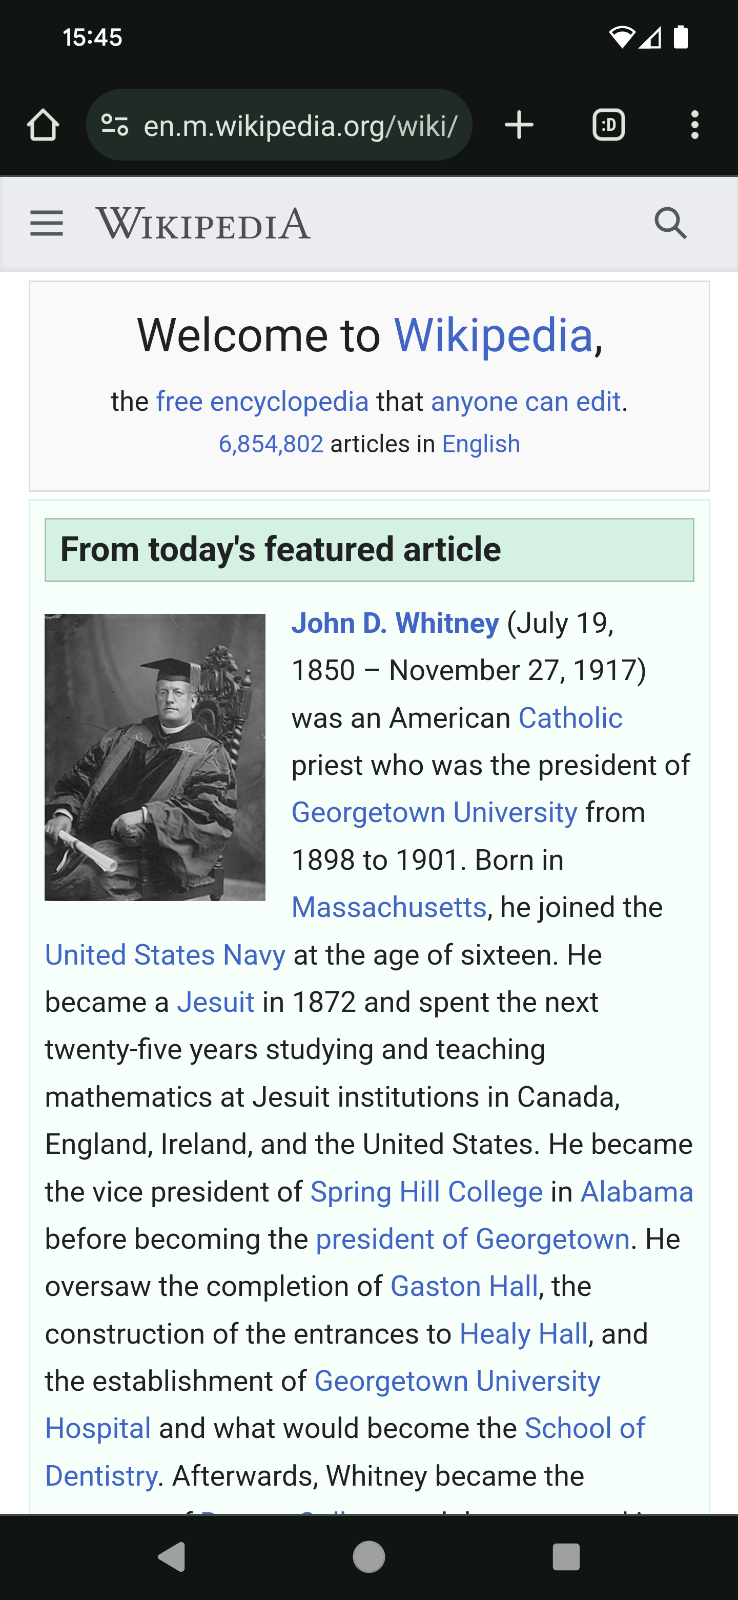 موقع ويكيبيديا على الأجهزة الجوّالة